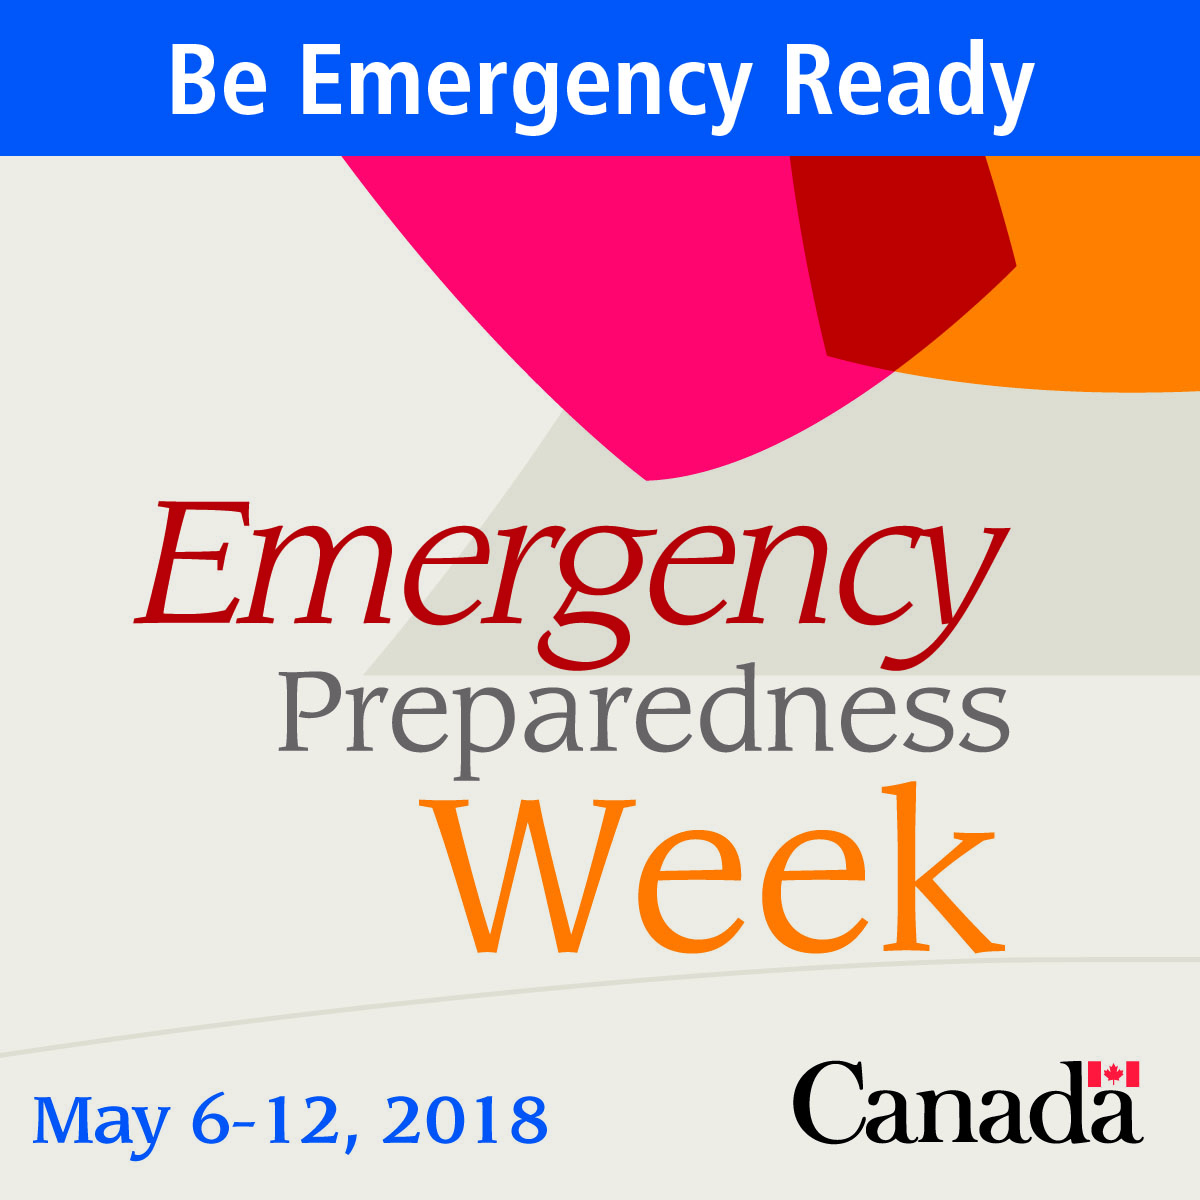 EMERGENCY PREPAREDNESS WEEK – May 6-12, 2018